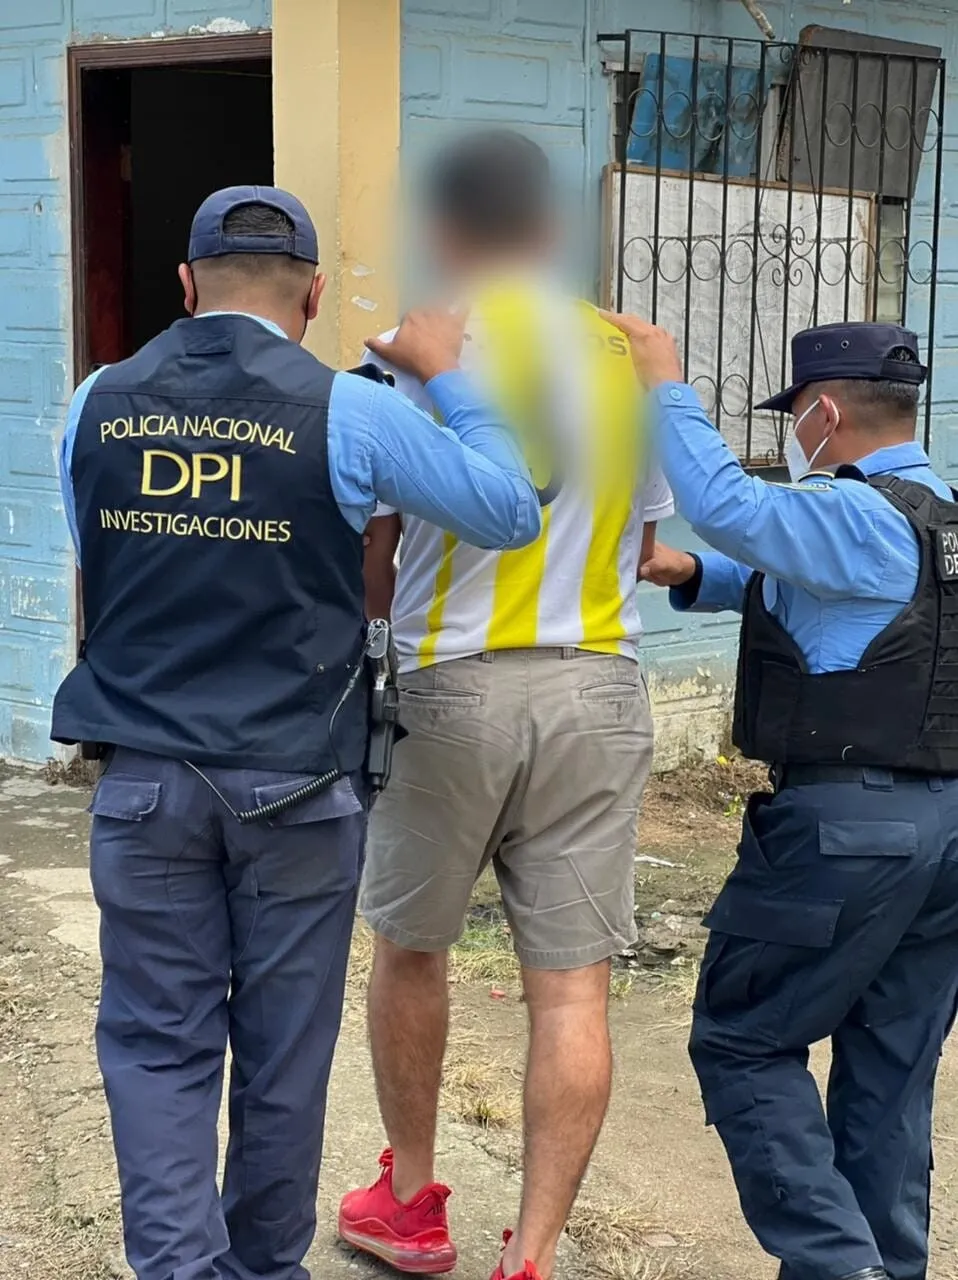 Arrestan presunto líder de Grupo Delictivo Organizado “Pandilla 18” en poder de armas de fuego y supuesta droga